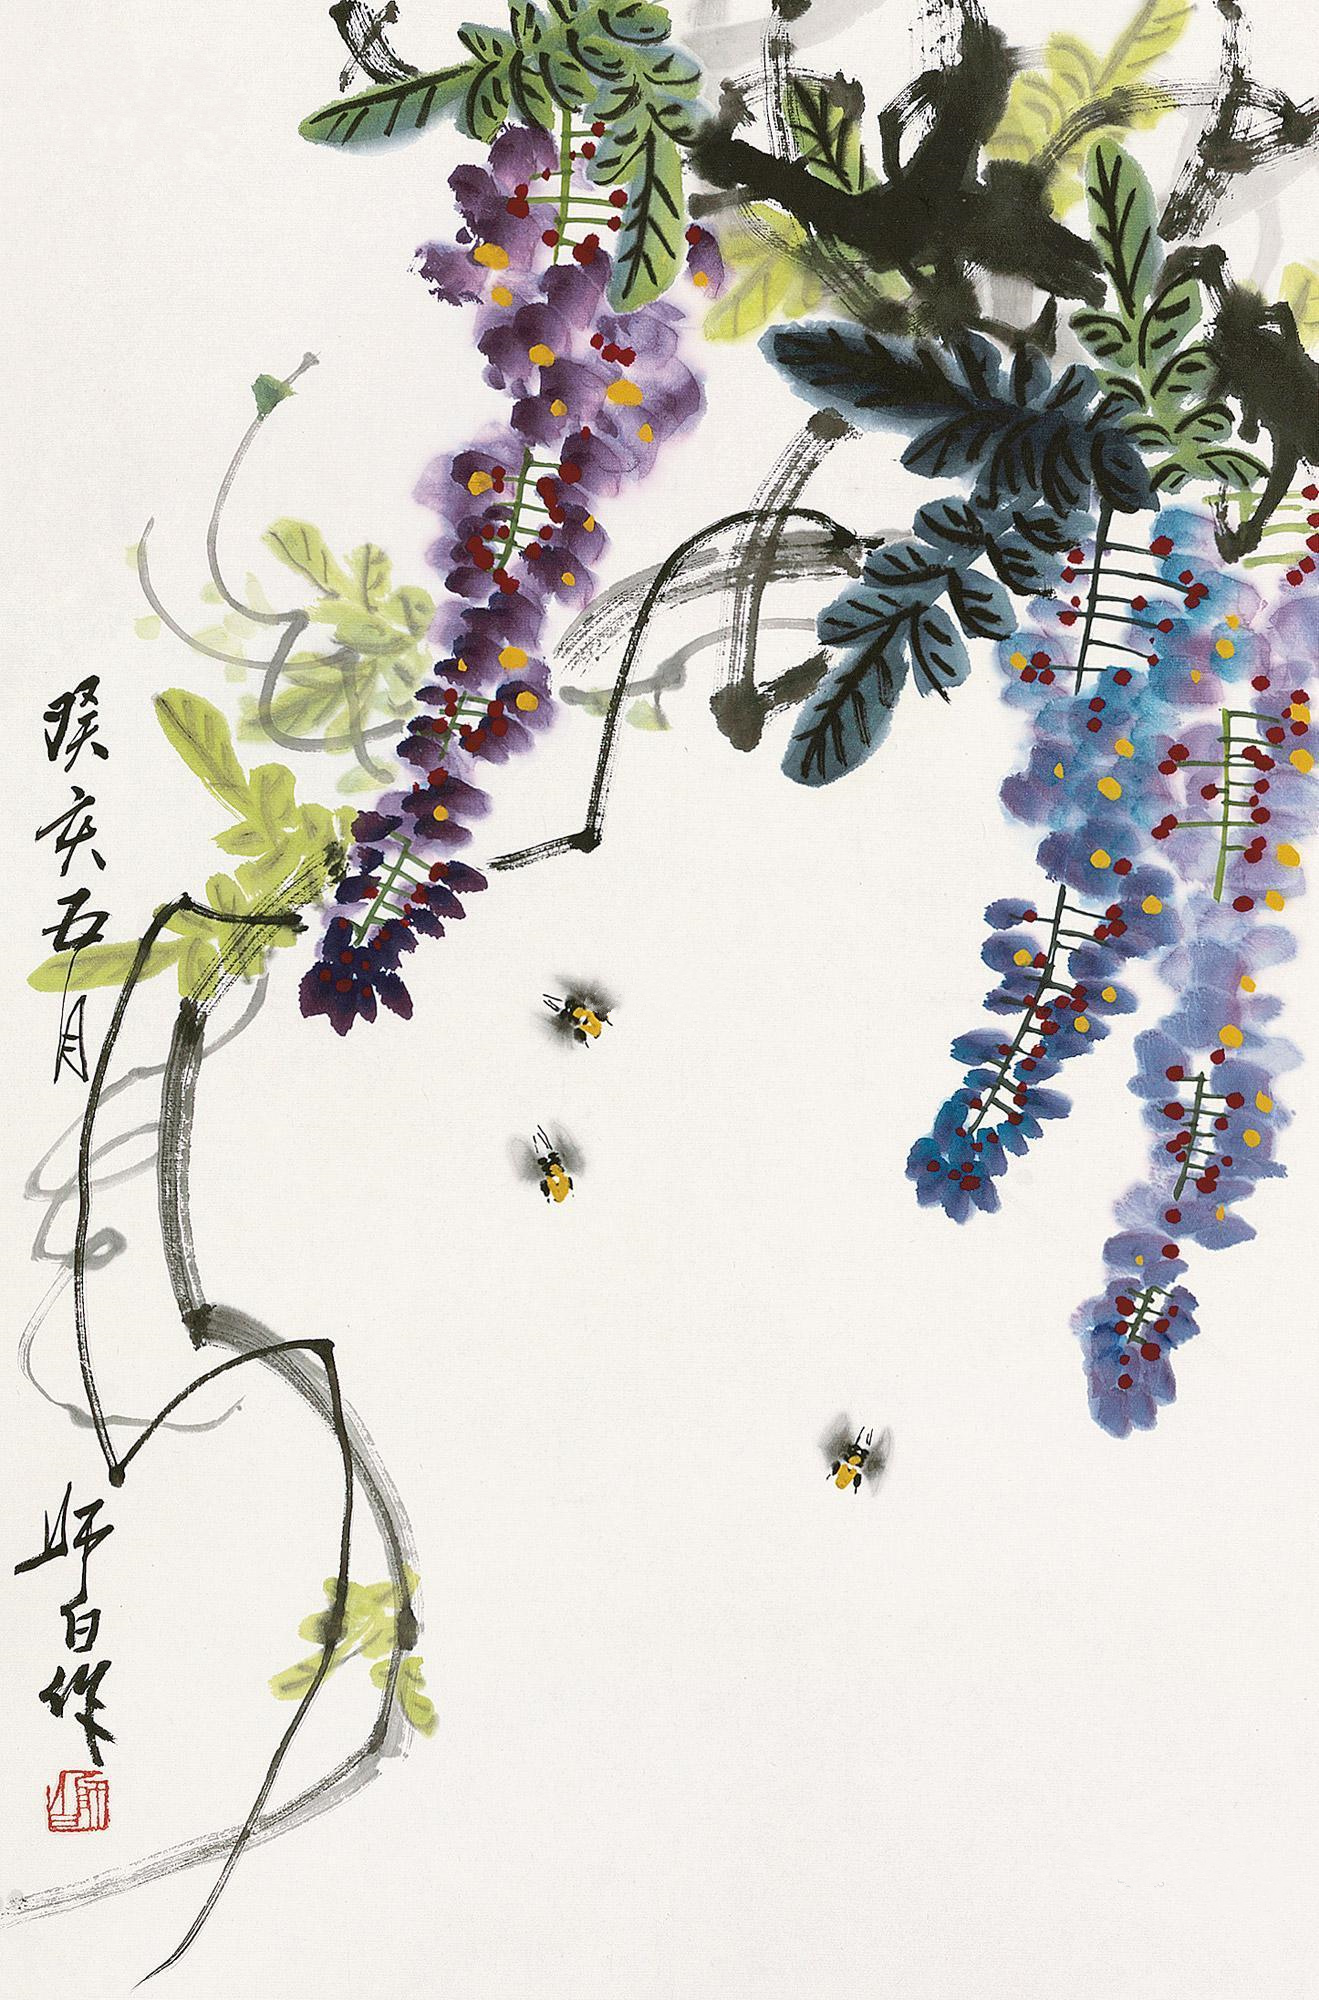      娄师白 作品名称 娄师白 紫藤蜜蜂 作品分类 国画